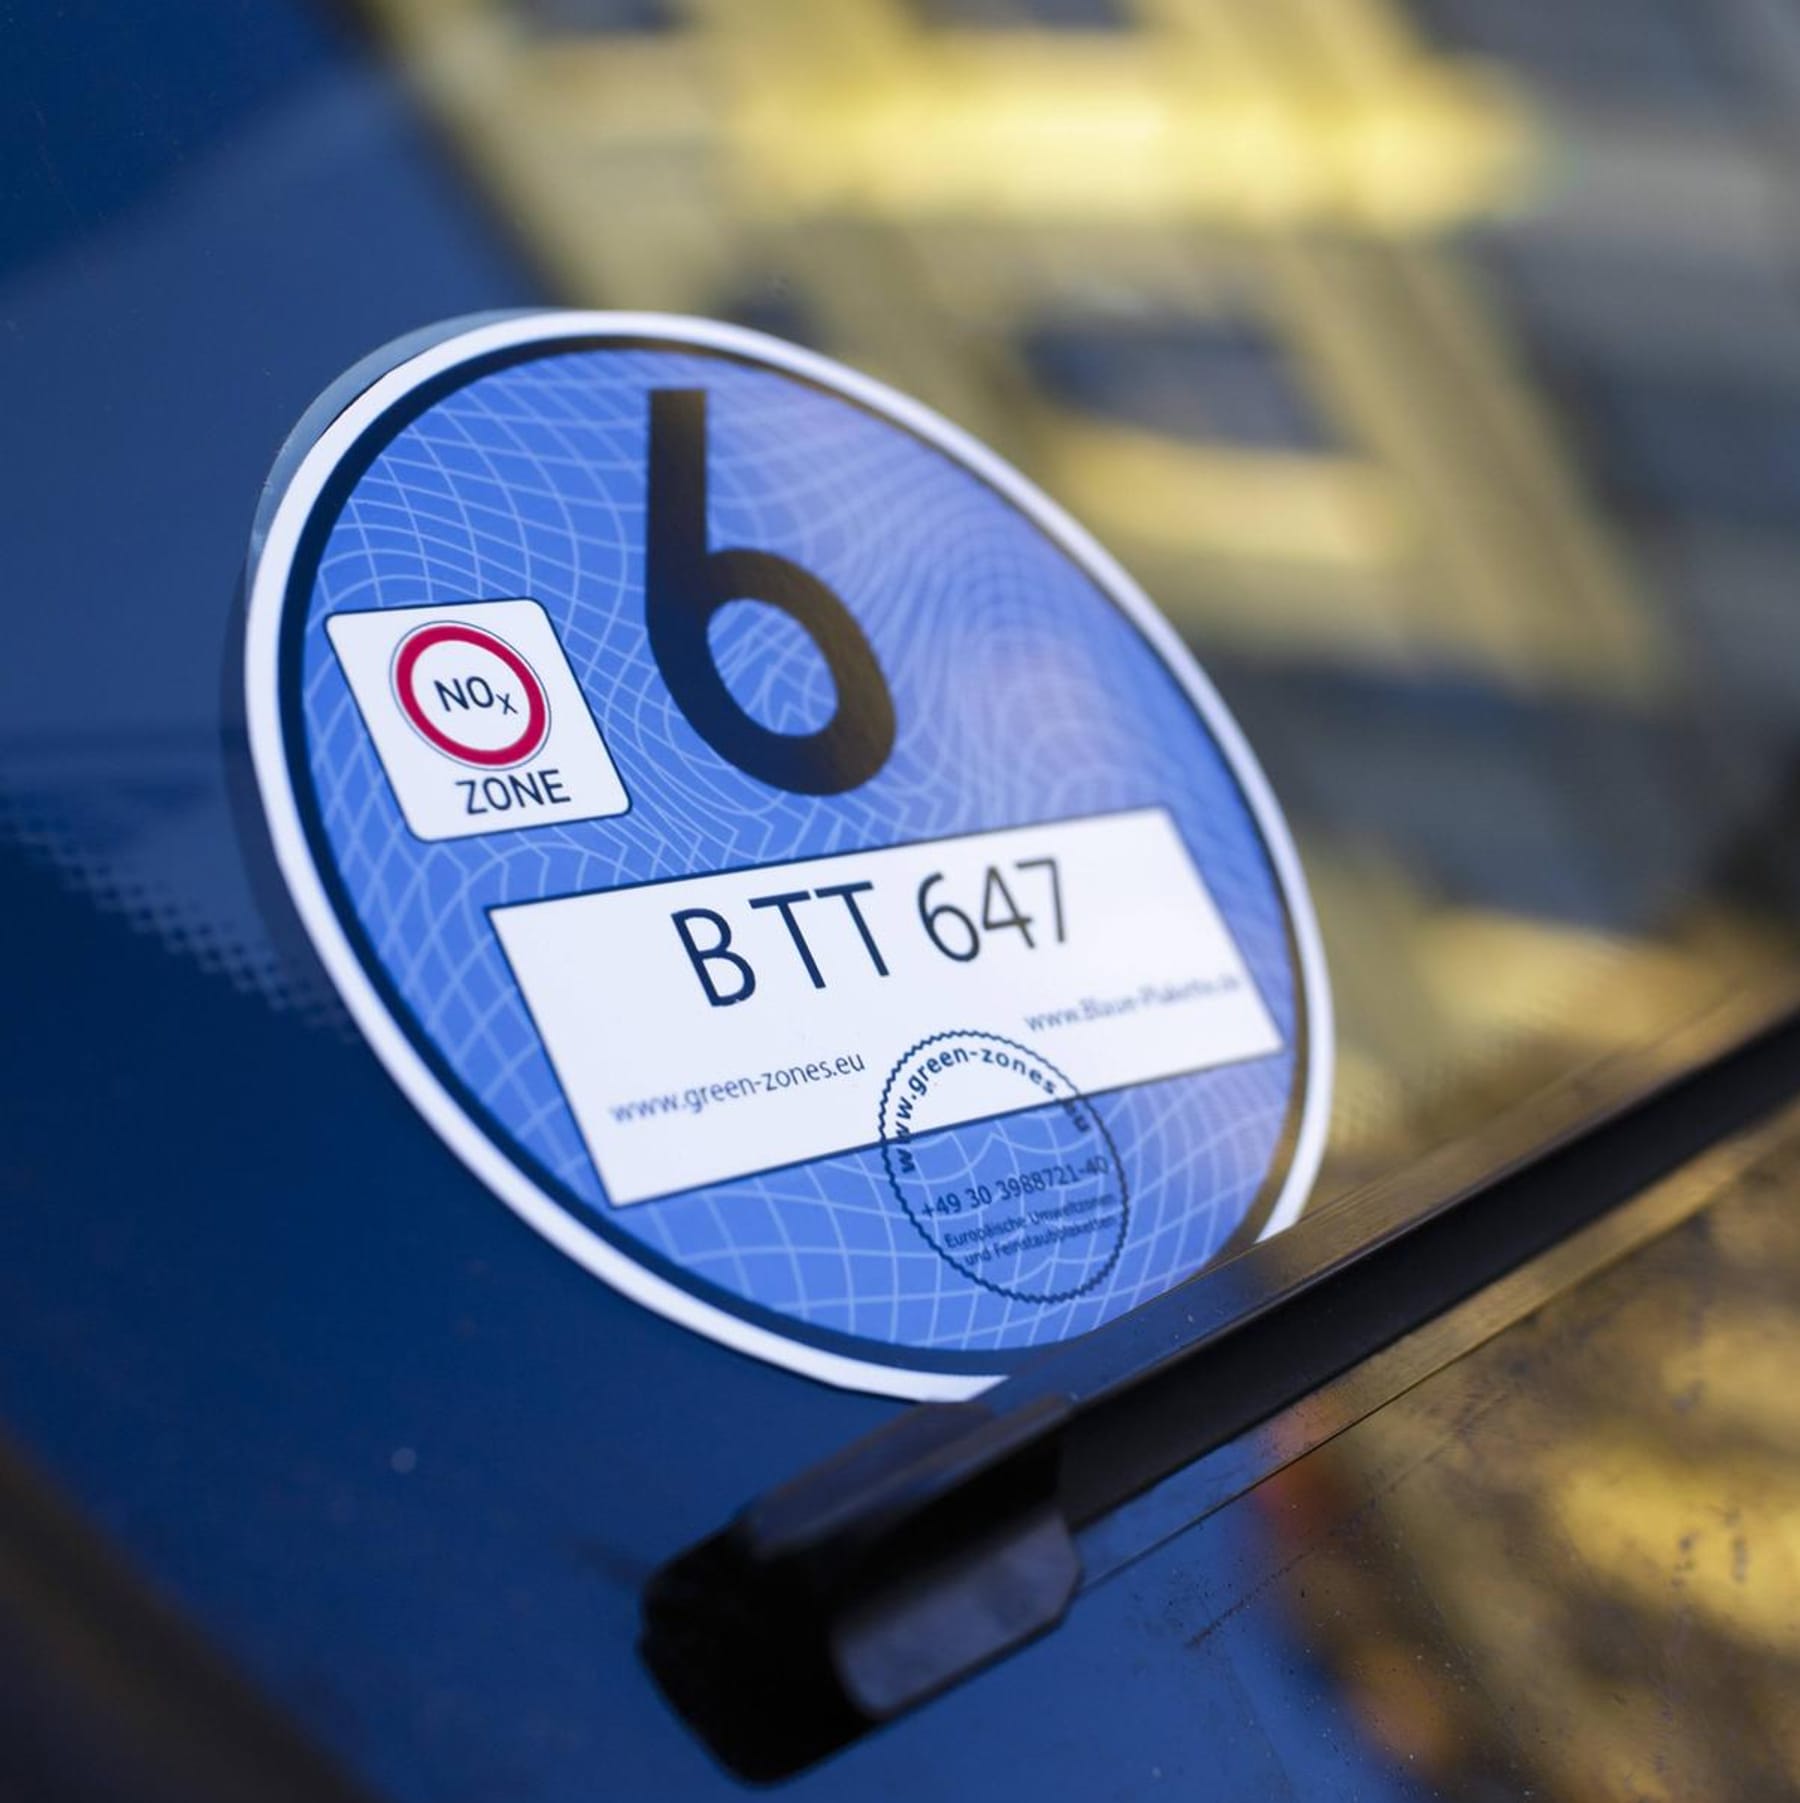 Blaue Plakette: Für wen sie ein Fahrverbot bedeuten würde